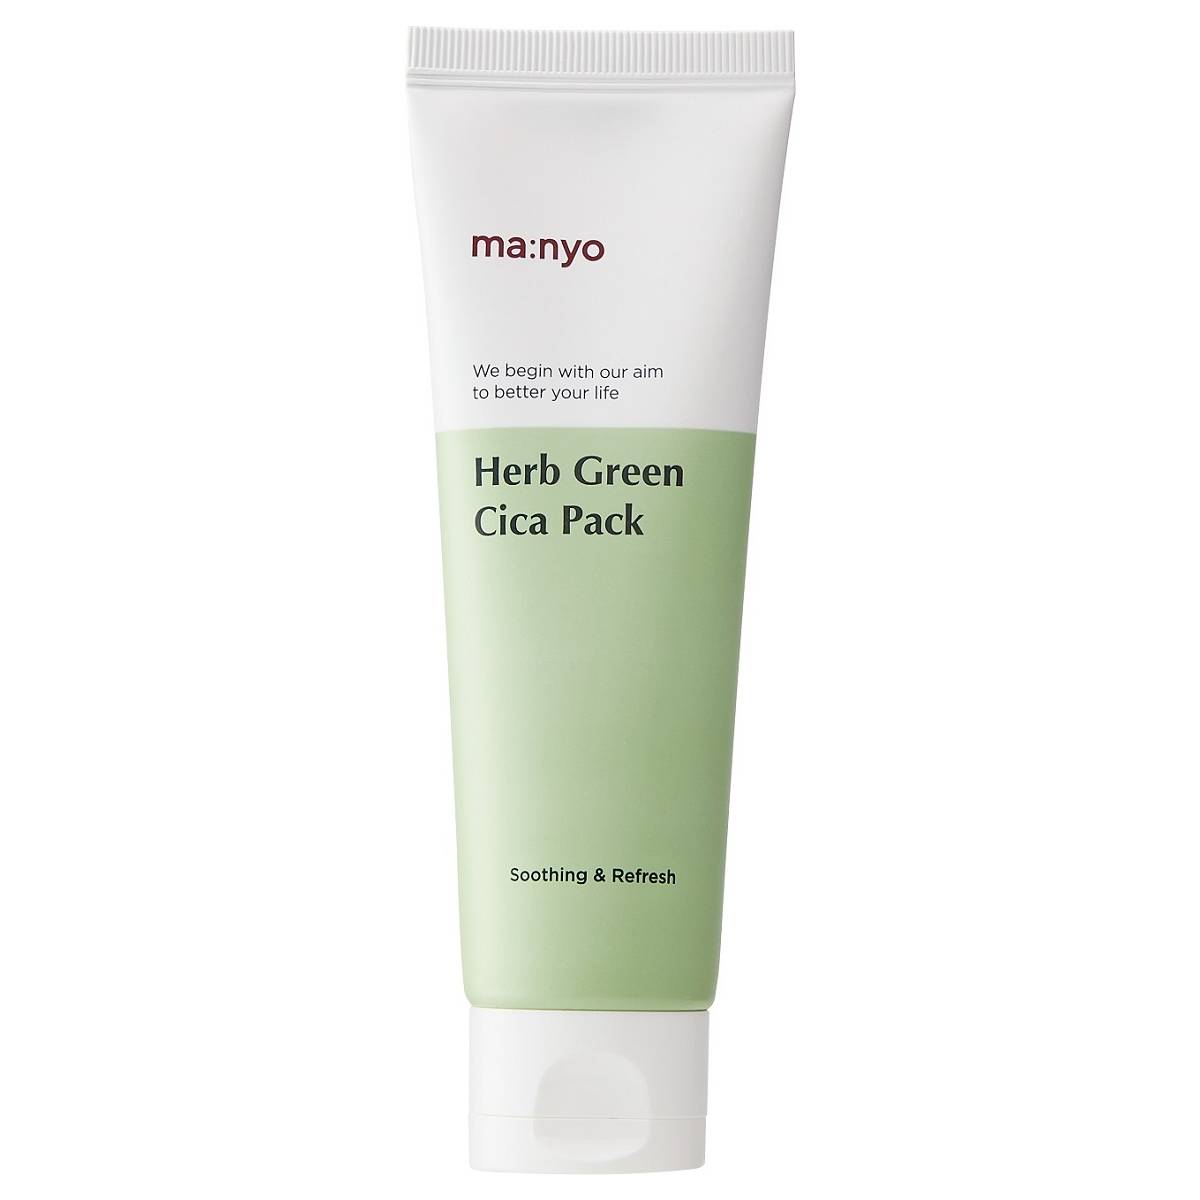 Manyo Успокаивающая маска с экстрактом зеленого чая для проблемной кожи Cica Pack, 75 мл (Manyo, Herb Green)